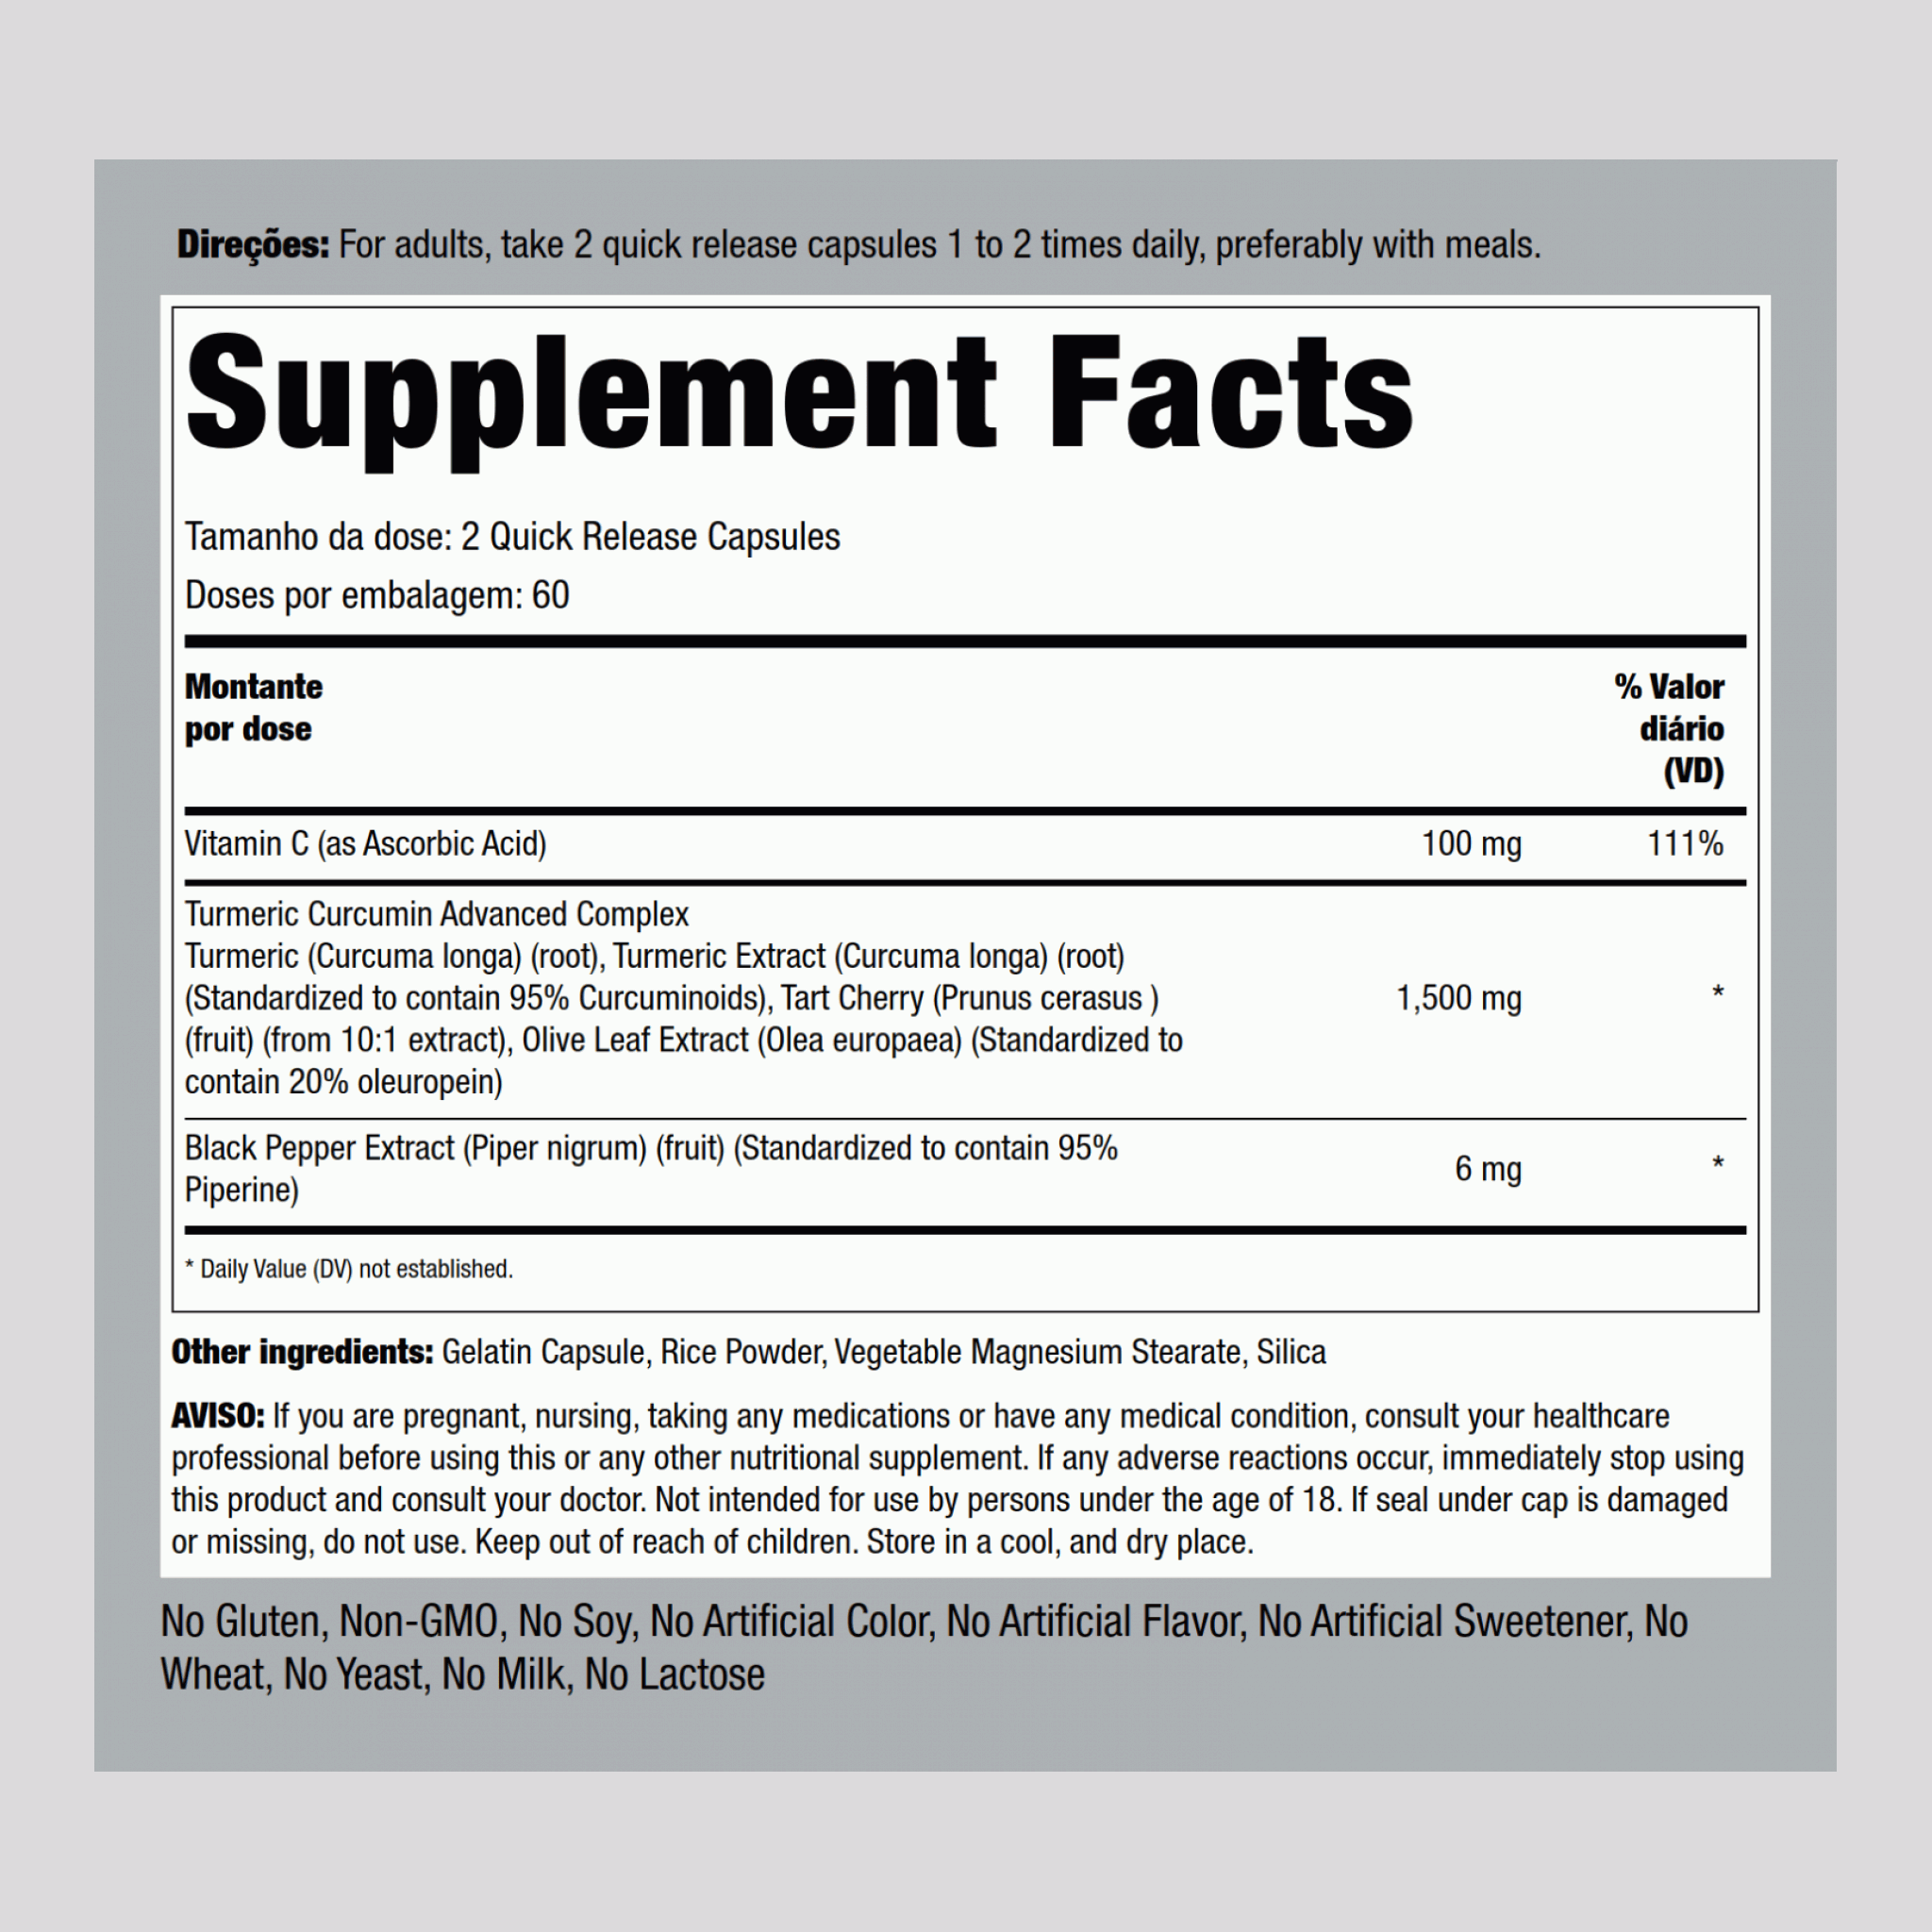 Complexo avançado de curcumina  1500 mg (por dose) 120 Cápsulas de Rápida Absorção     